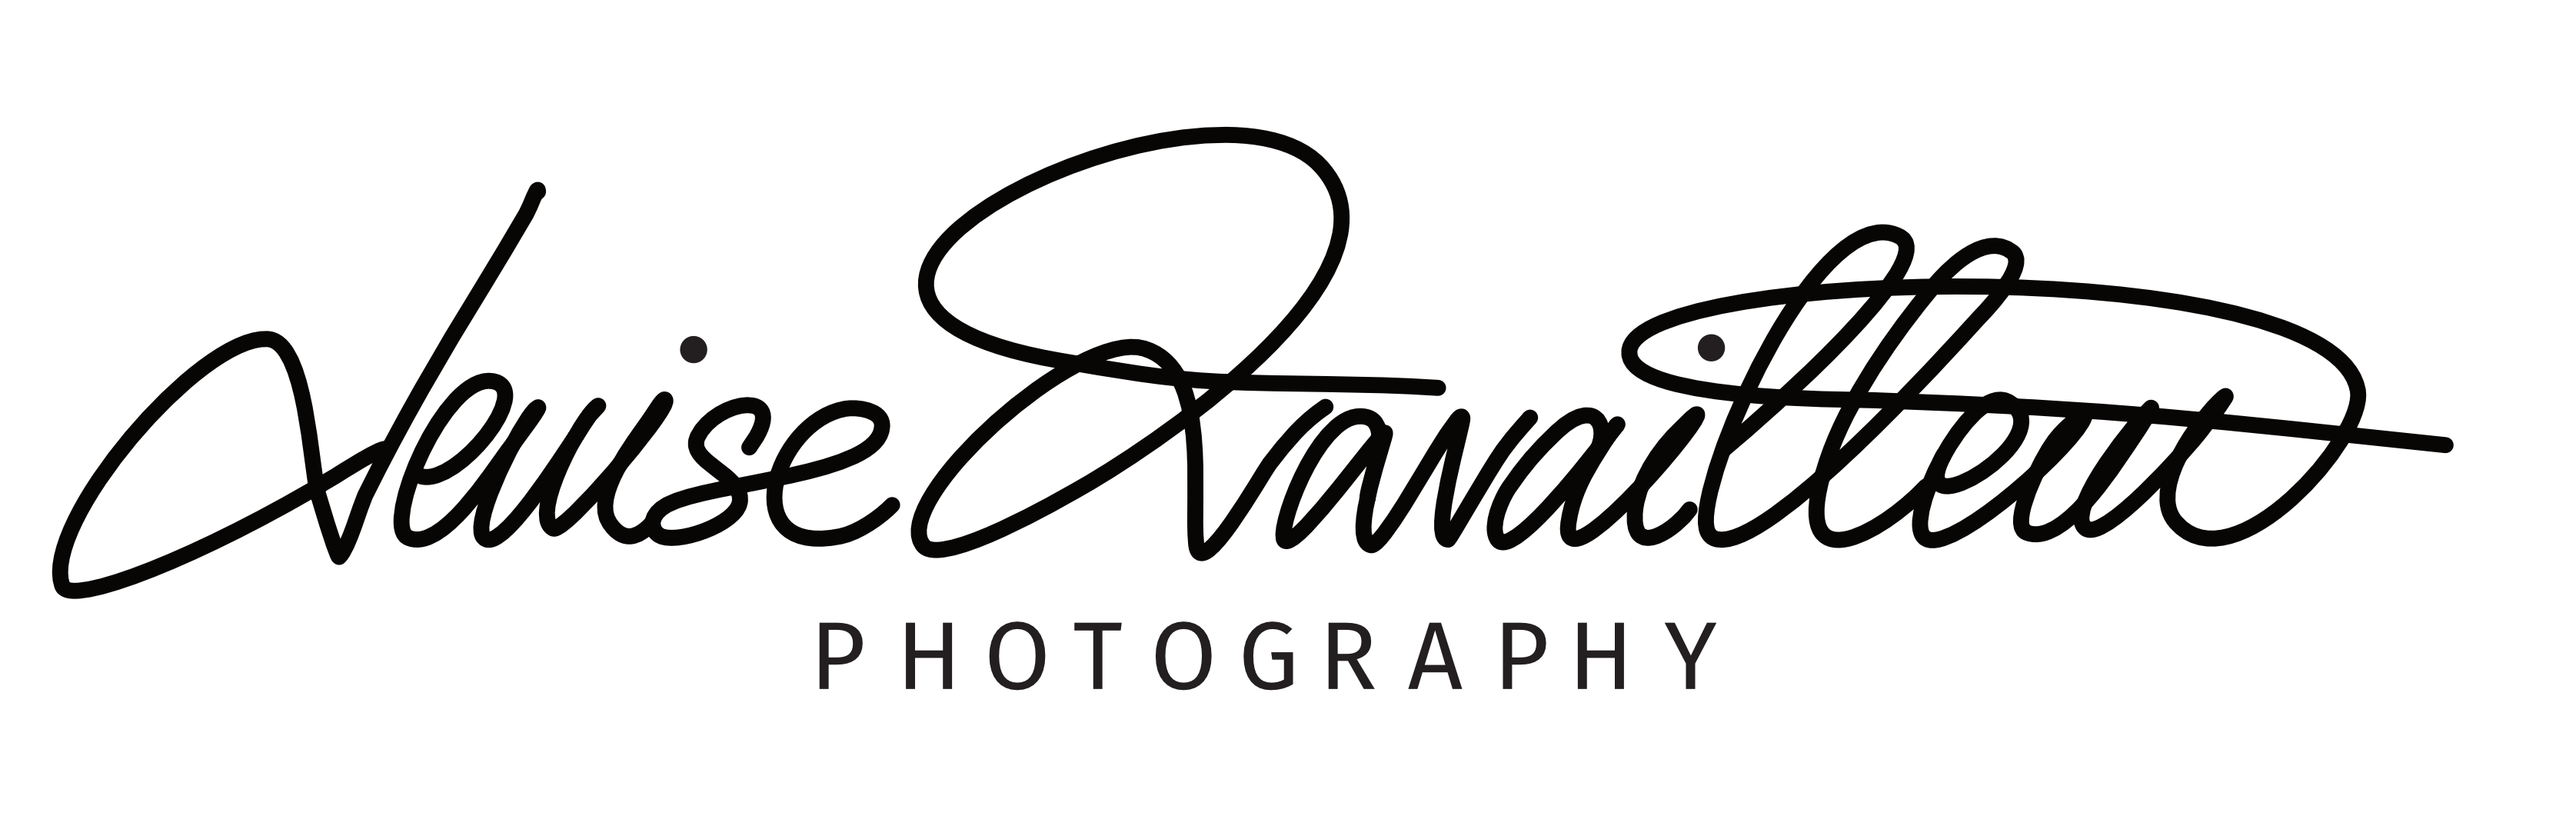 Denise Travailleur Photography | Logo